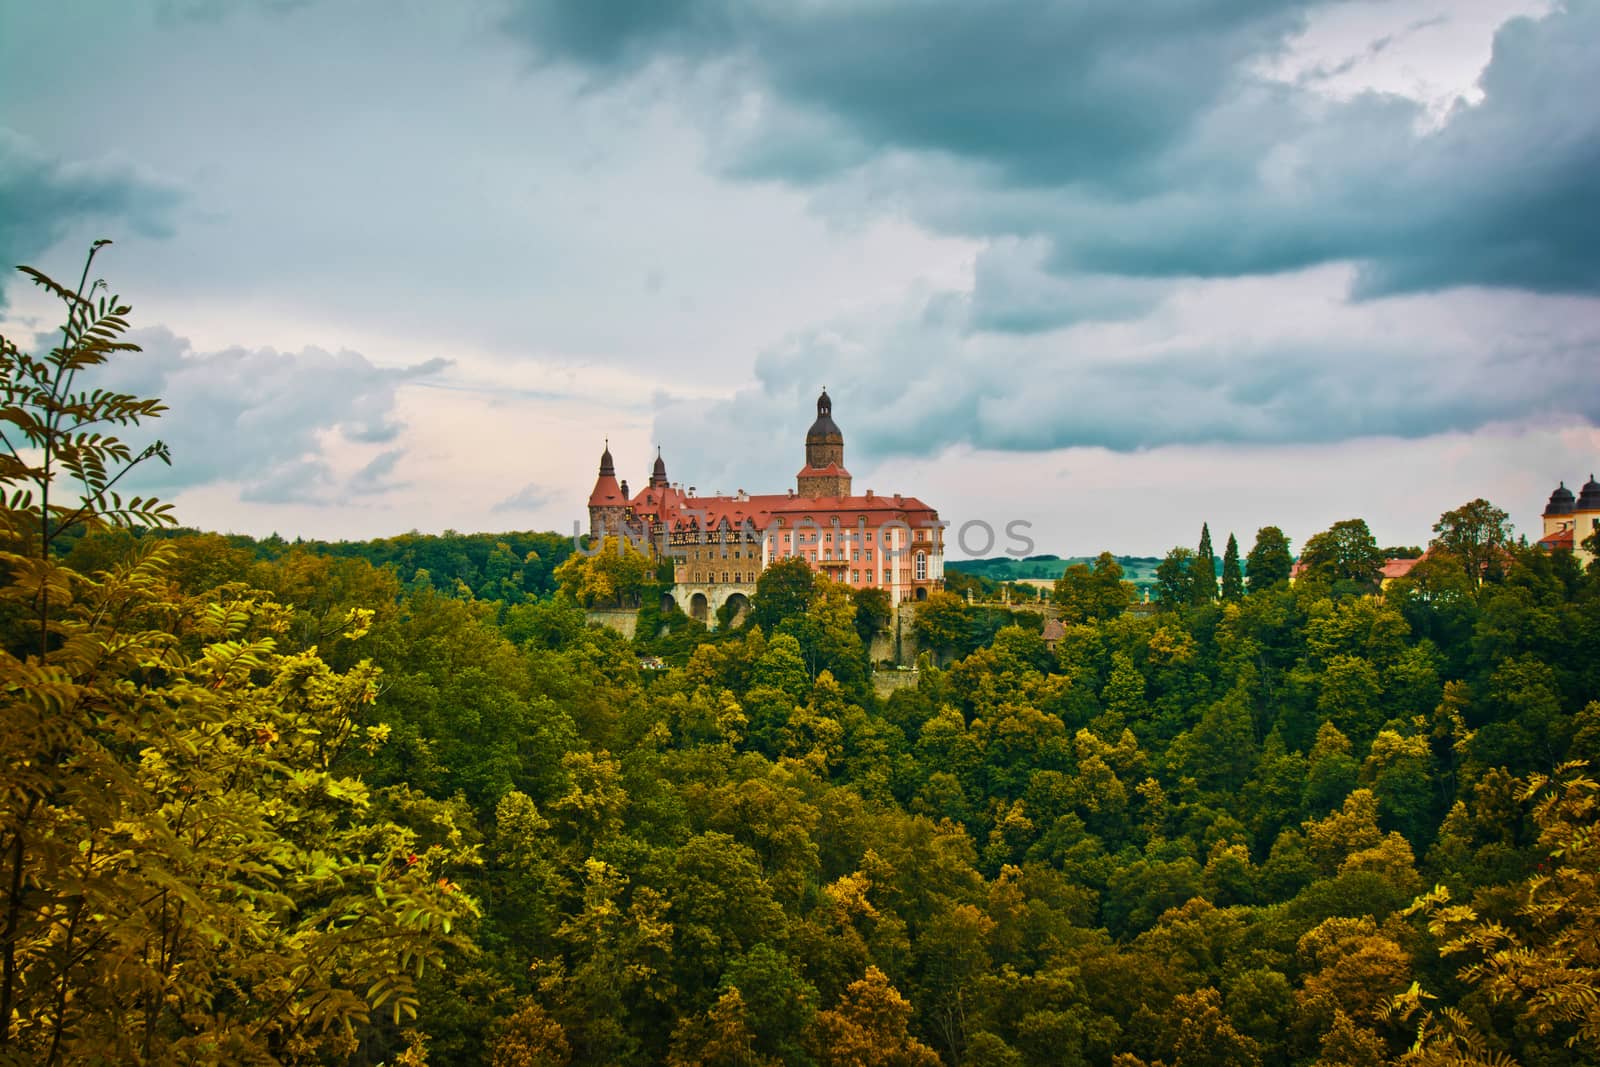 Ksiaz Castle in Walbrzych, Lower Silesia, Poland. 